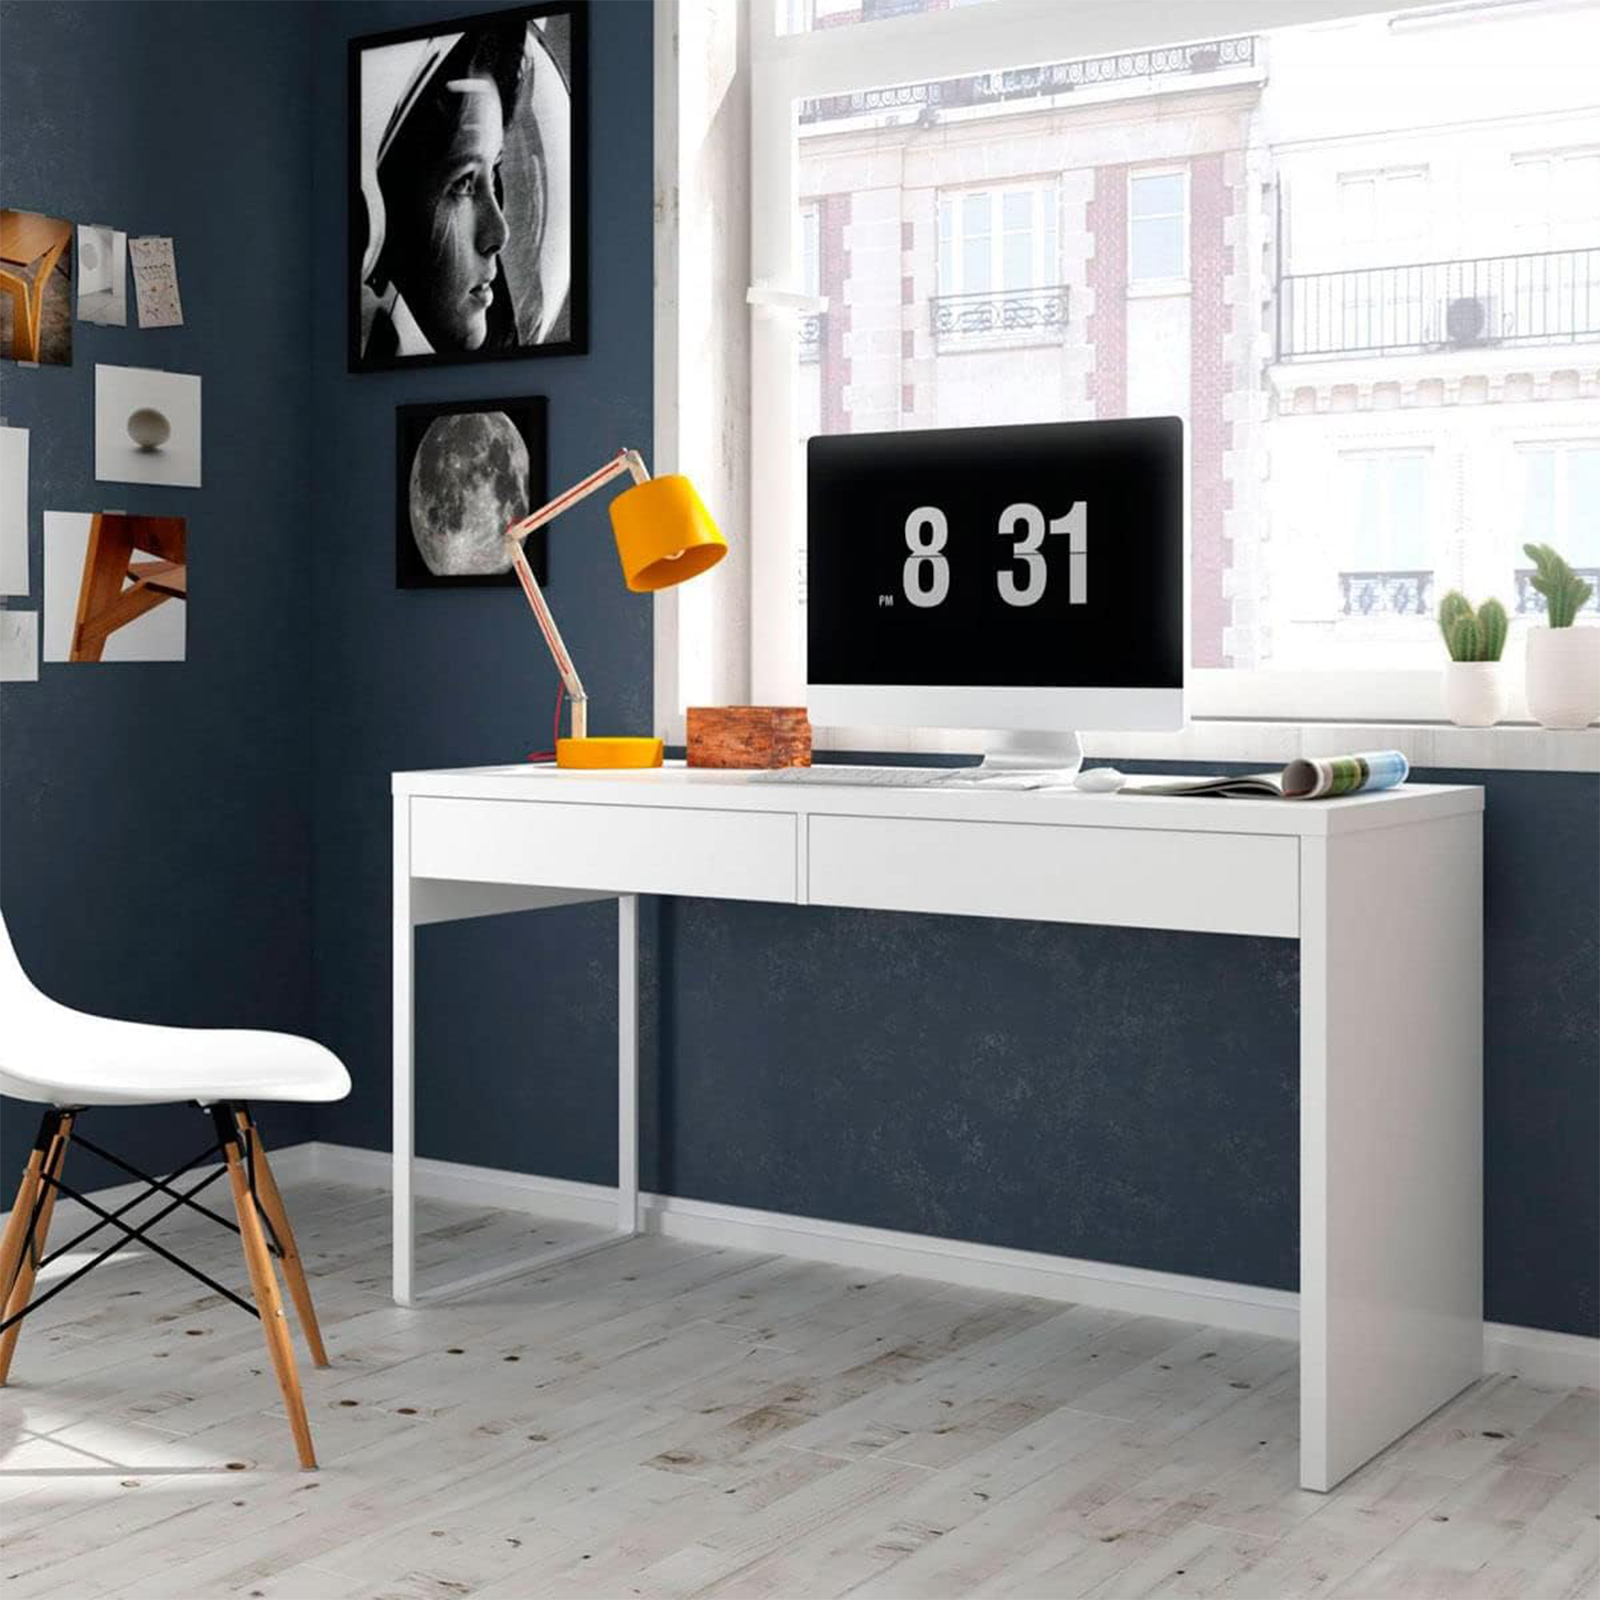 Scrivania porta computer Touch in legno bianco per ufficio con 2 cassetti cm 138x50 75h